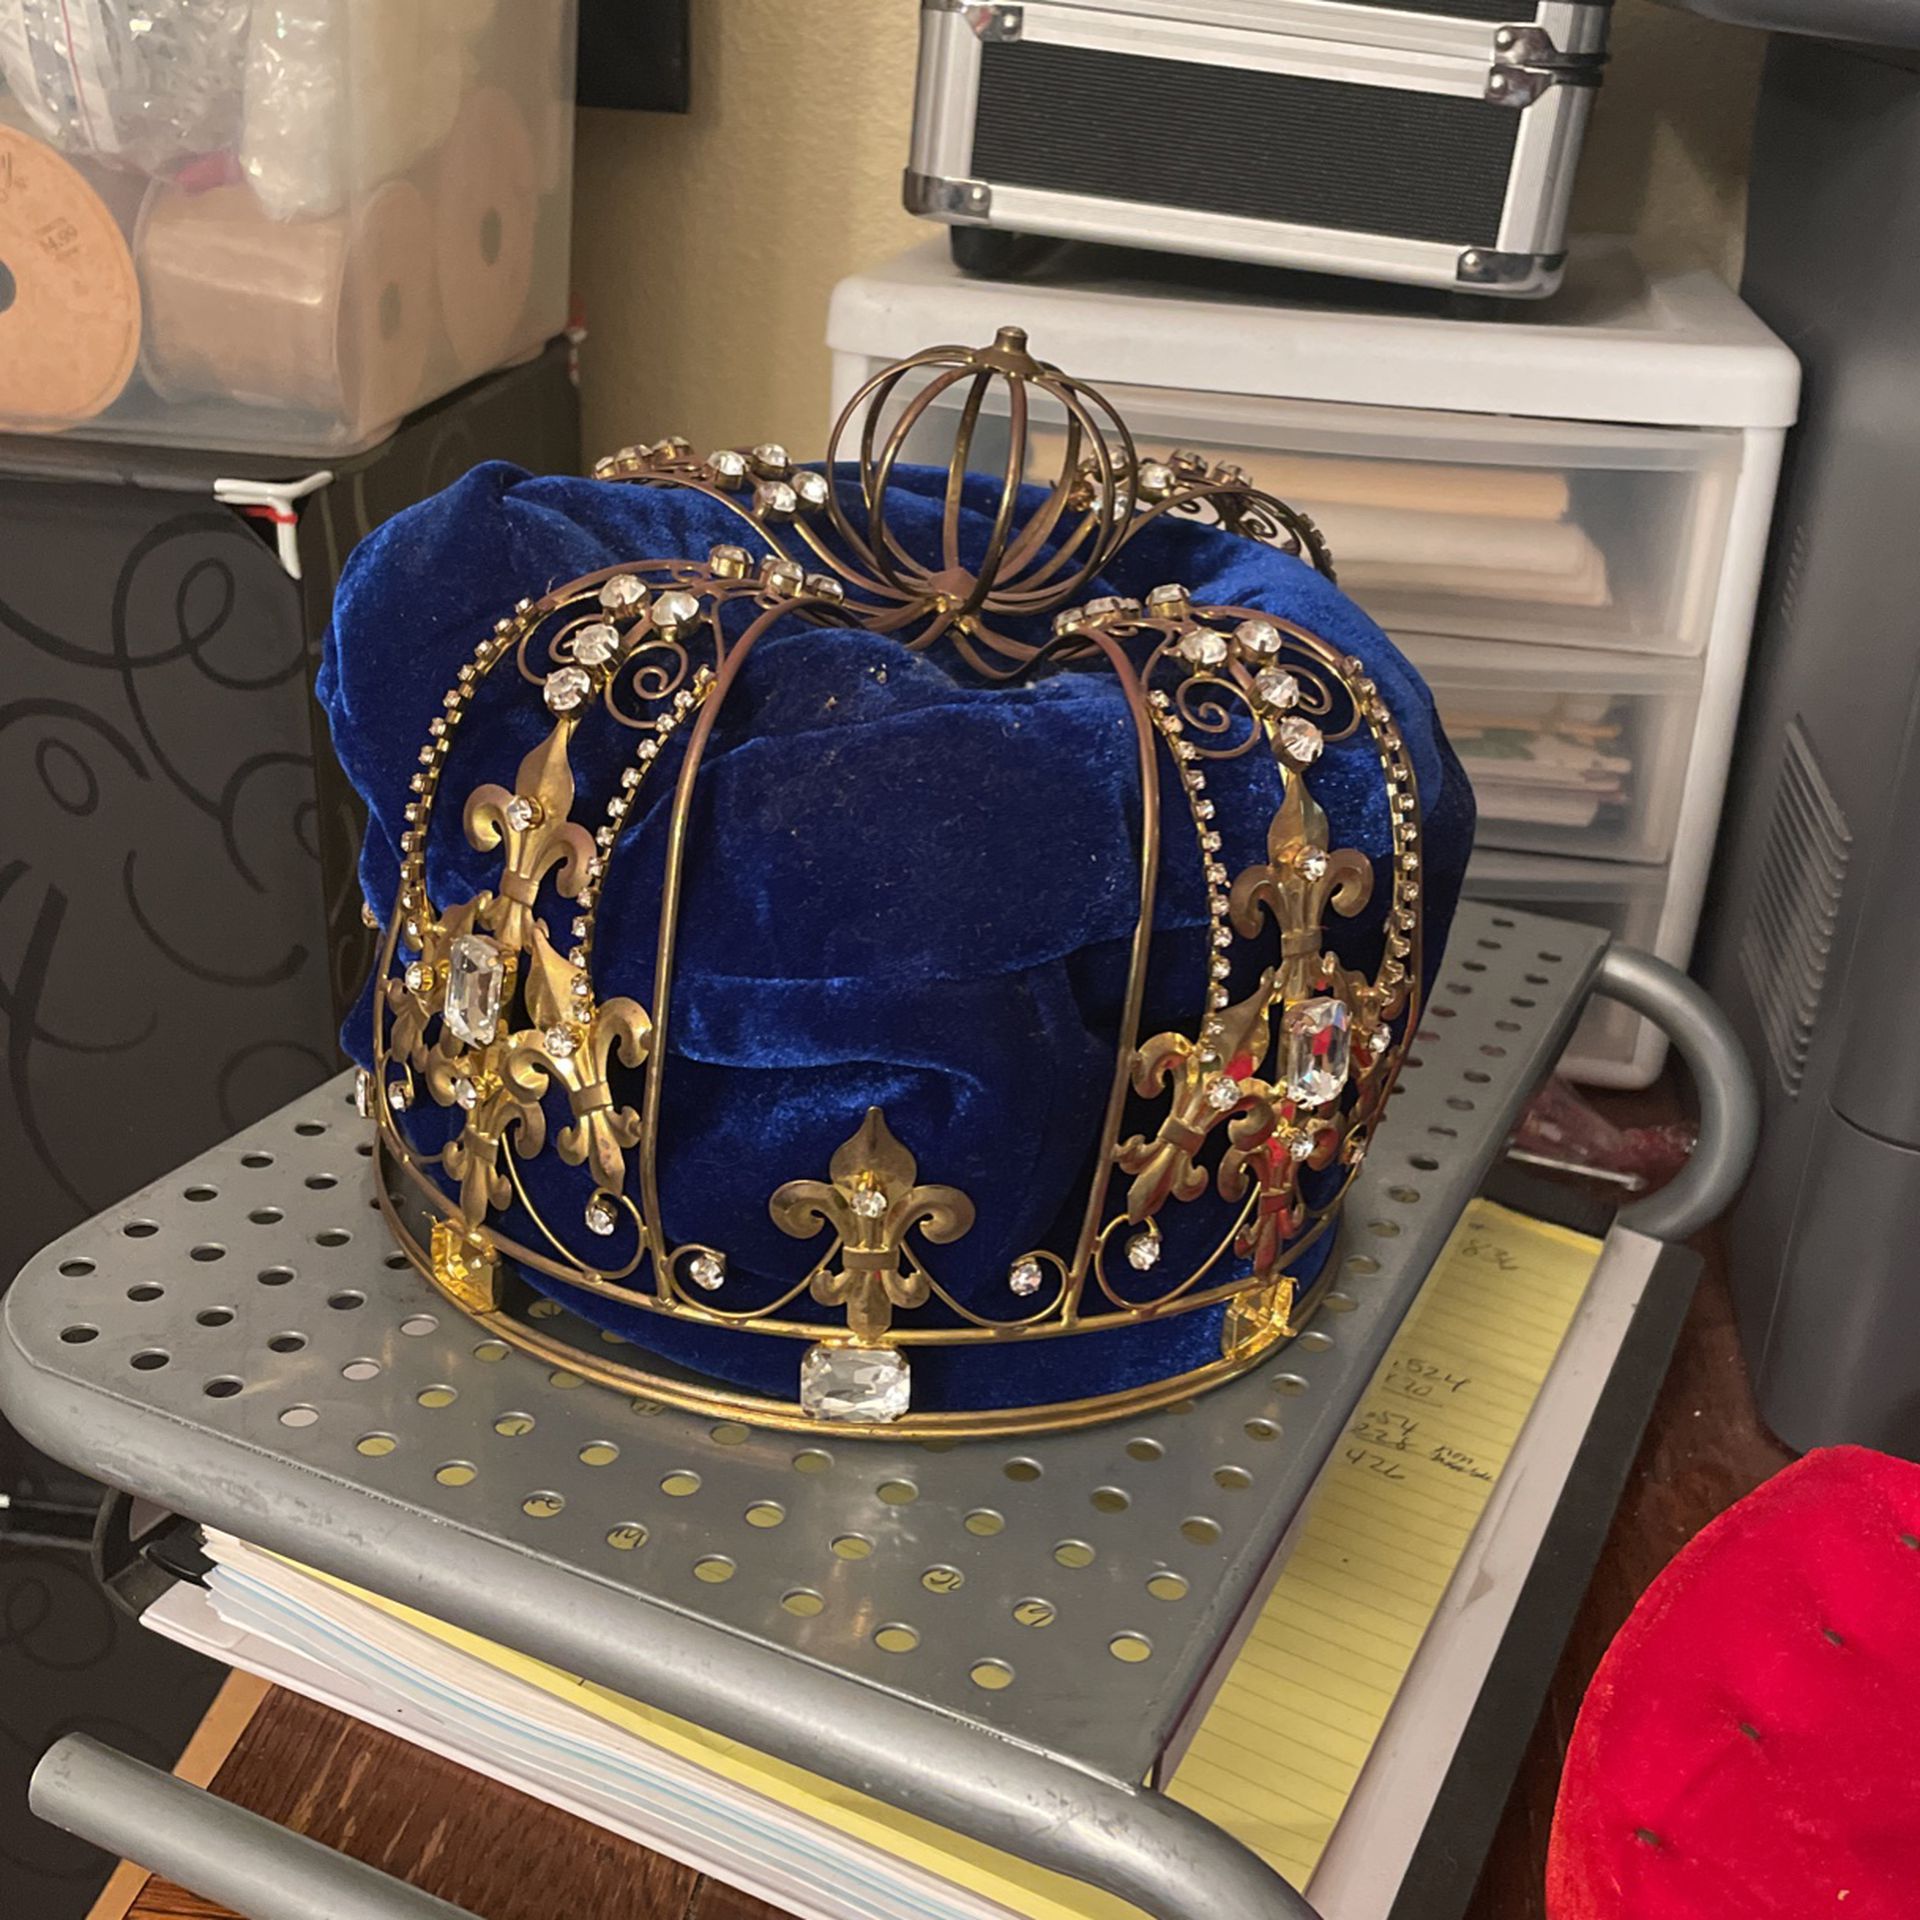 A Kings Crown